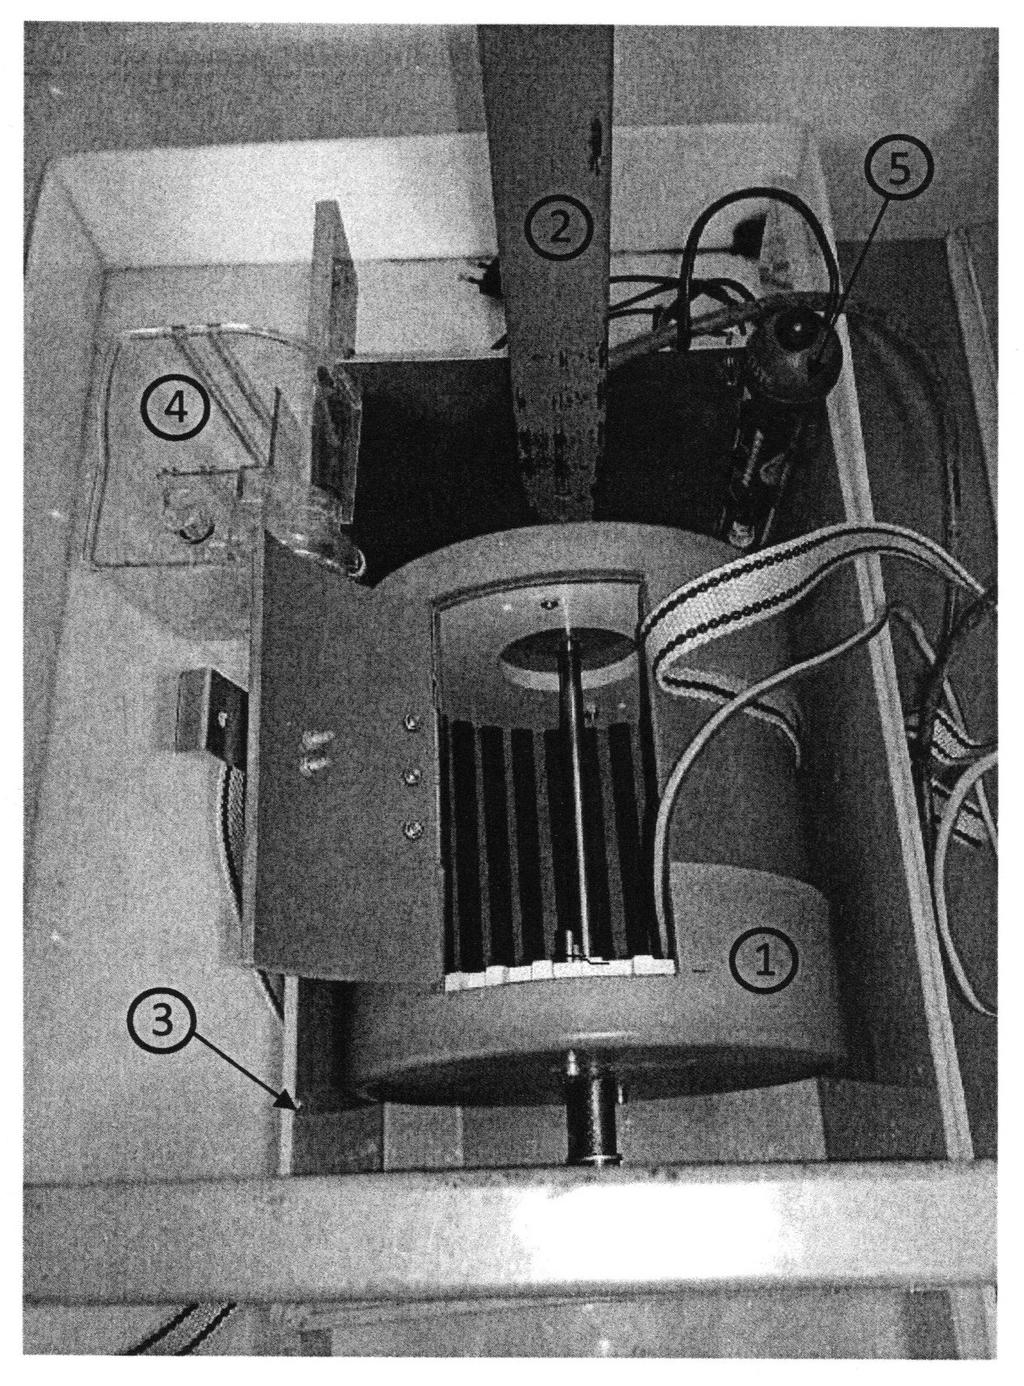 Lukáš Marusič Obrázek 24 zkušební zařízení: 1 - trubka DN200 s grafitovými elektrodami, 2 - konzole, 3 - KTL vana, 4 čerpadlo, 5 topná spirála [14] Zařízení pracovalo na principu dávkové výroby.